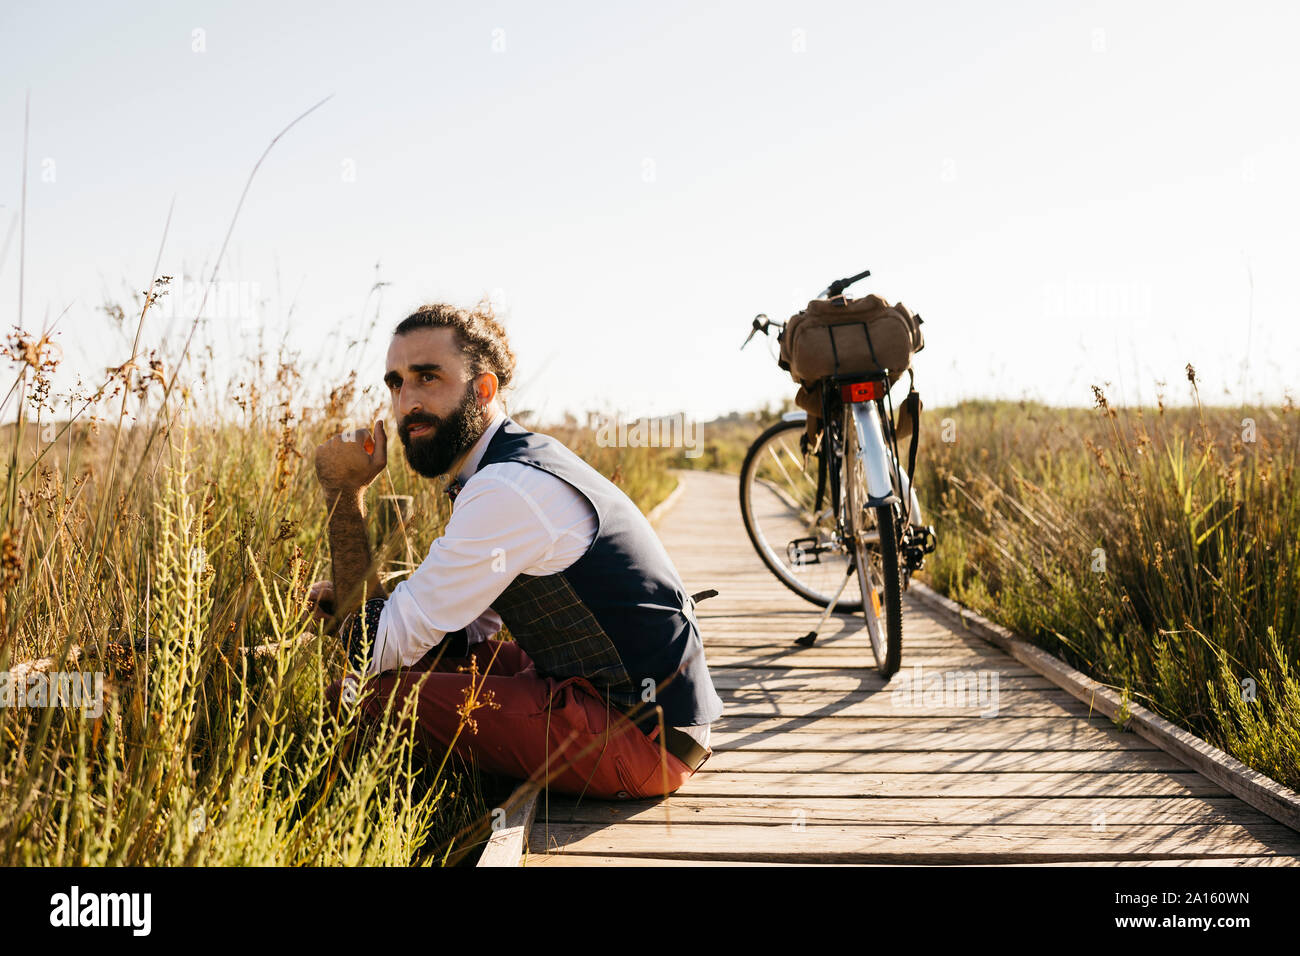 Ben vestito uomo seduto su una passerella di legno in campagna accanto a una bicicletta Foto Stock